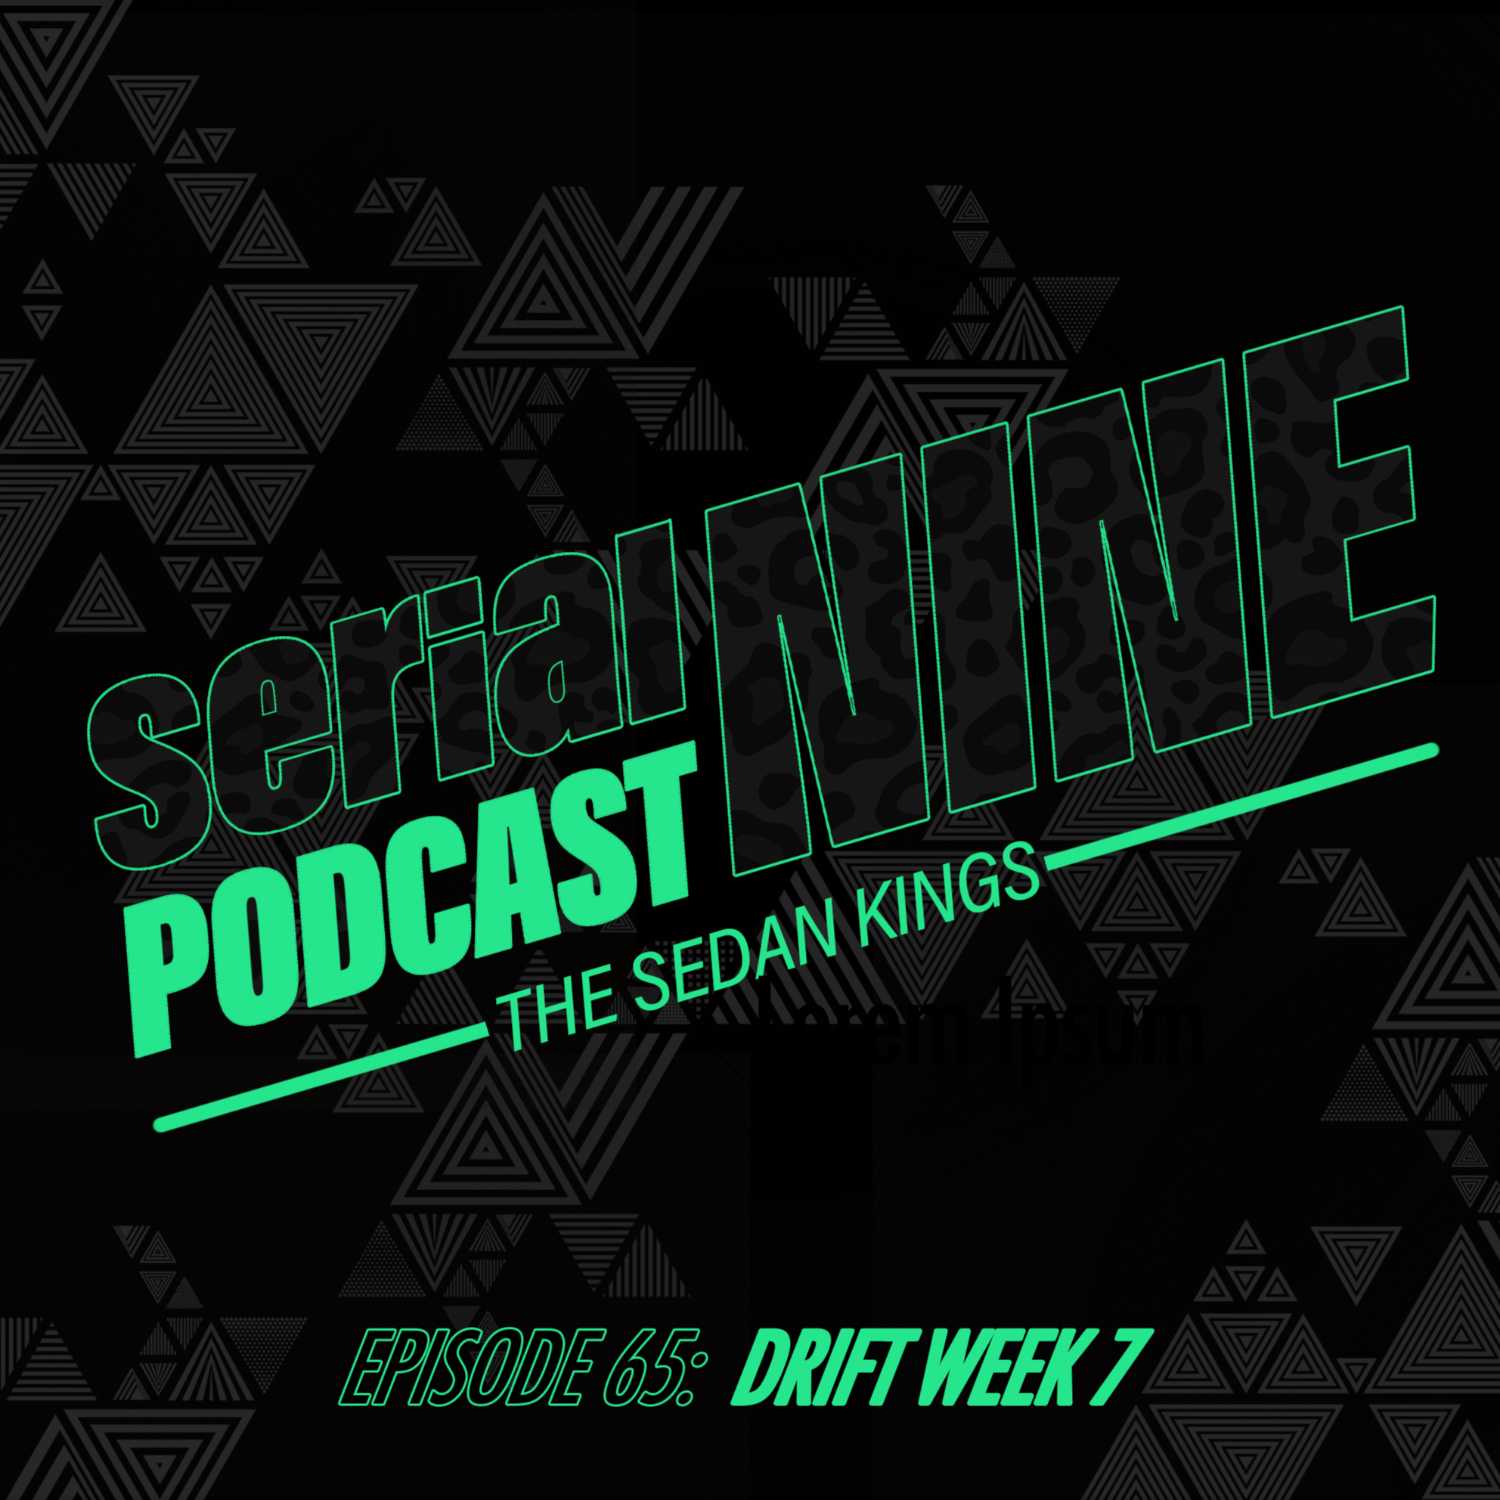 SerialPodcastNine Episode 65 Drift Week 7